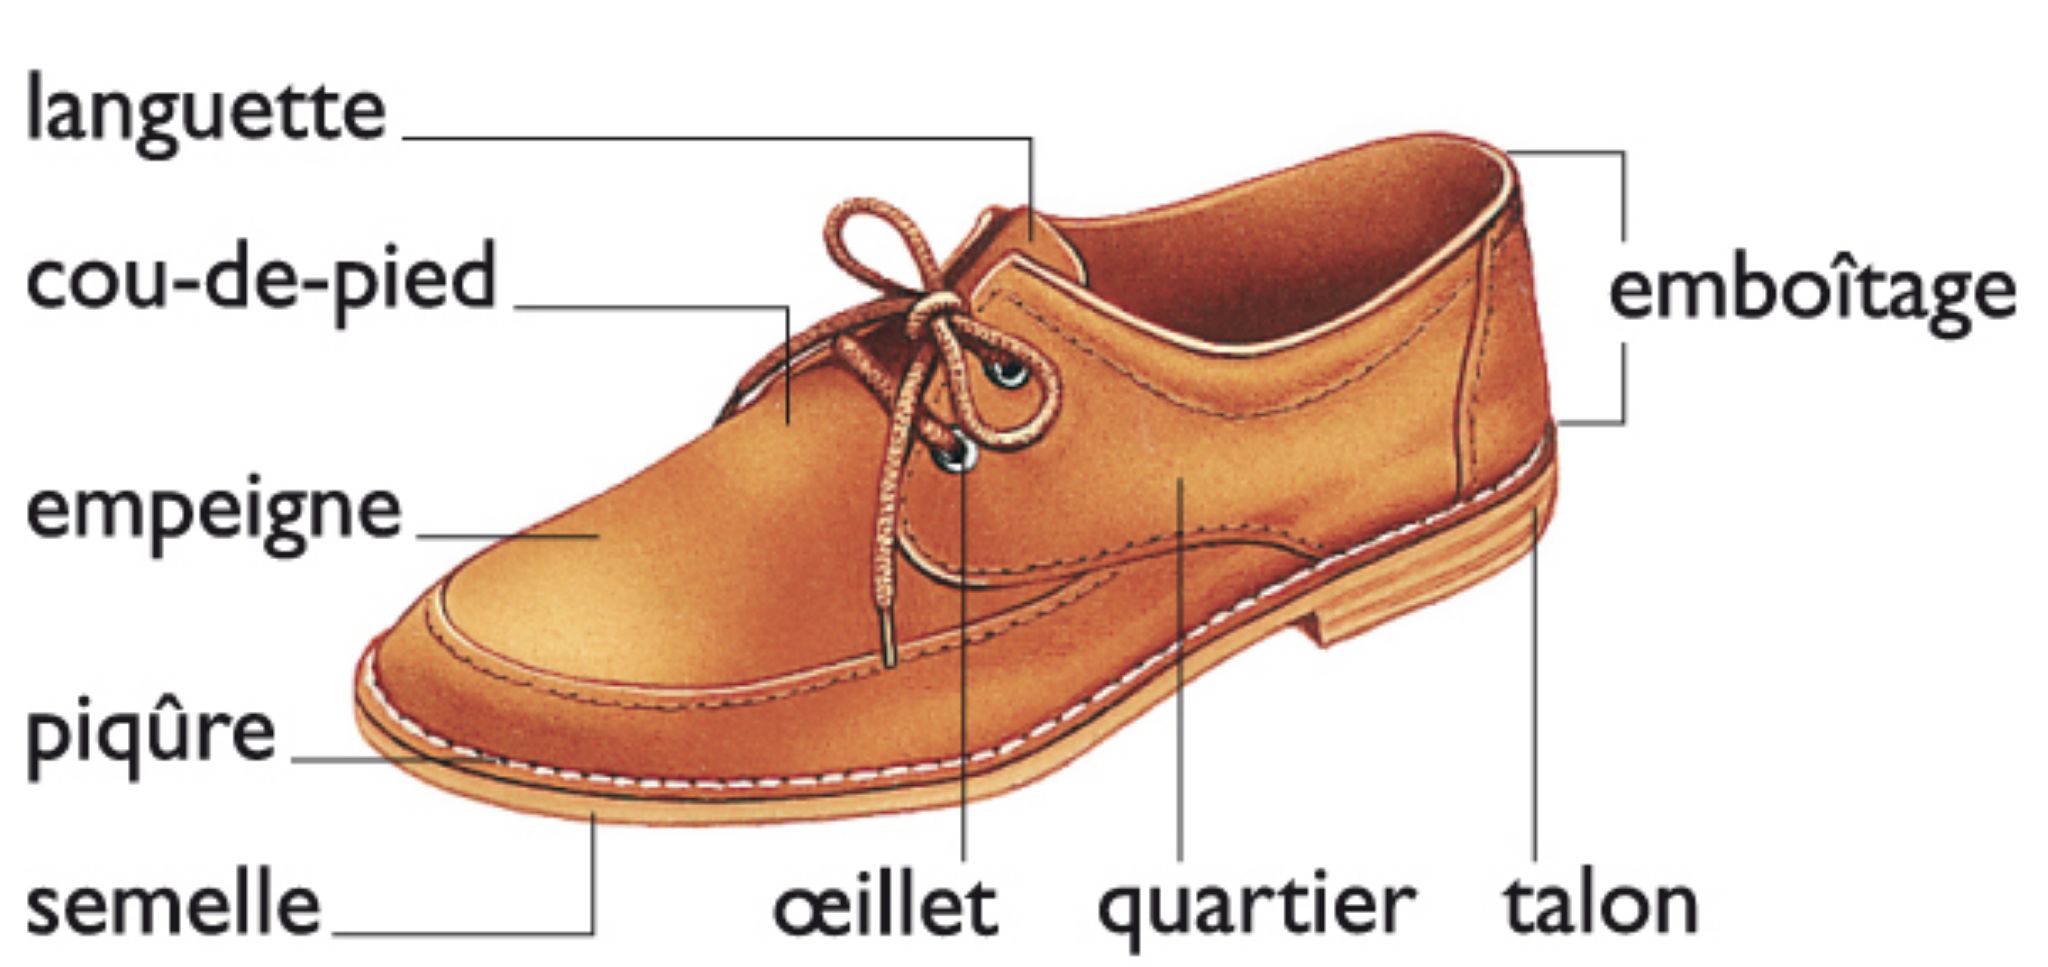 les éléments constitutifs d’une chaussure